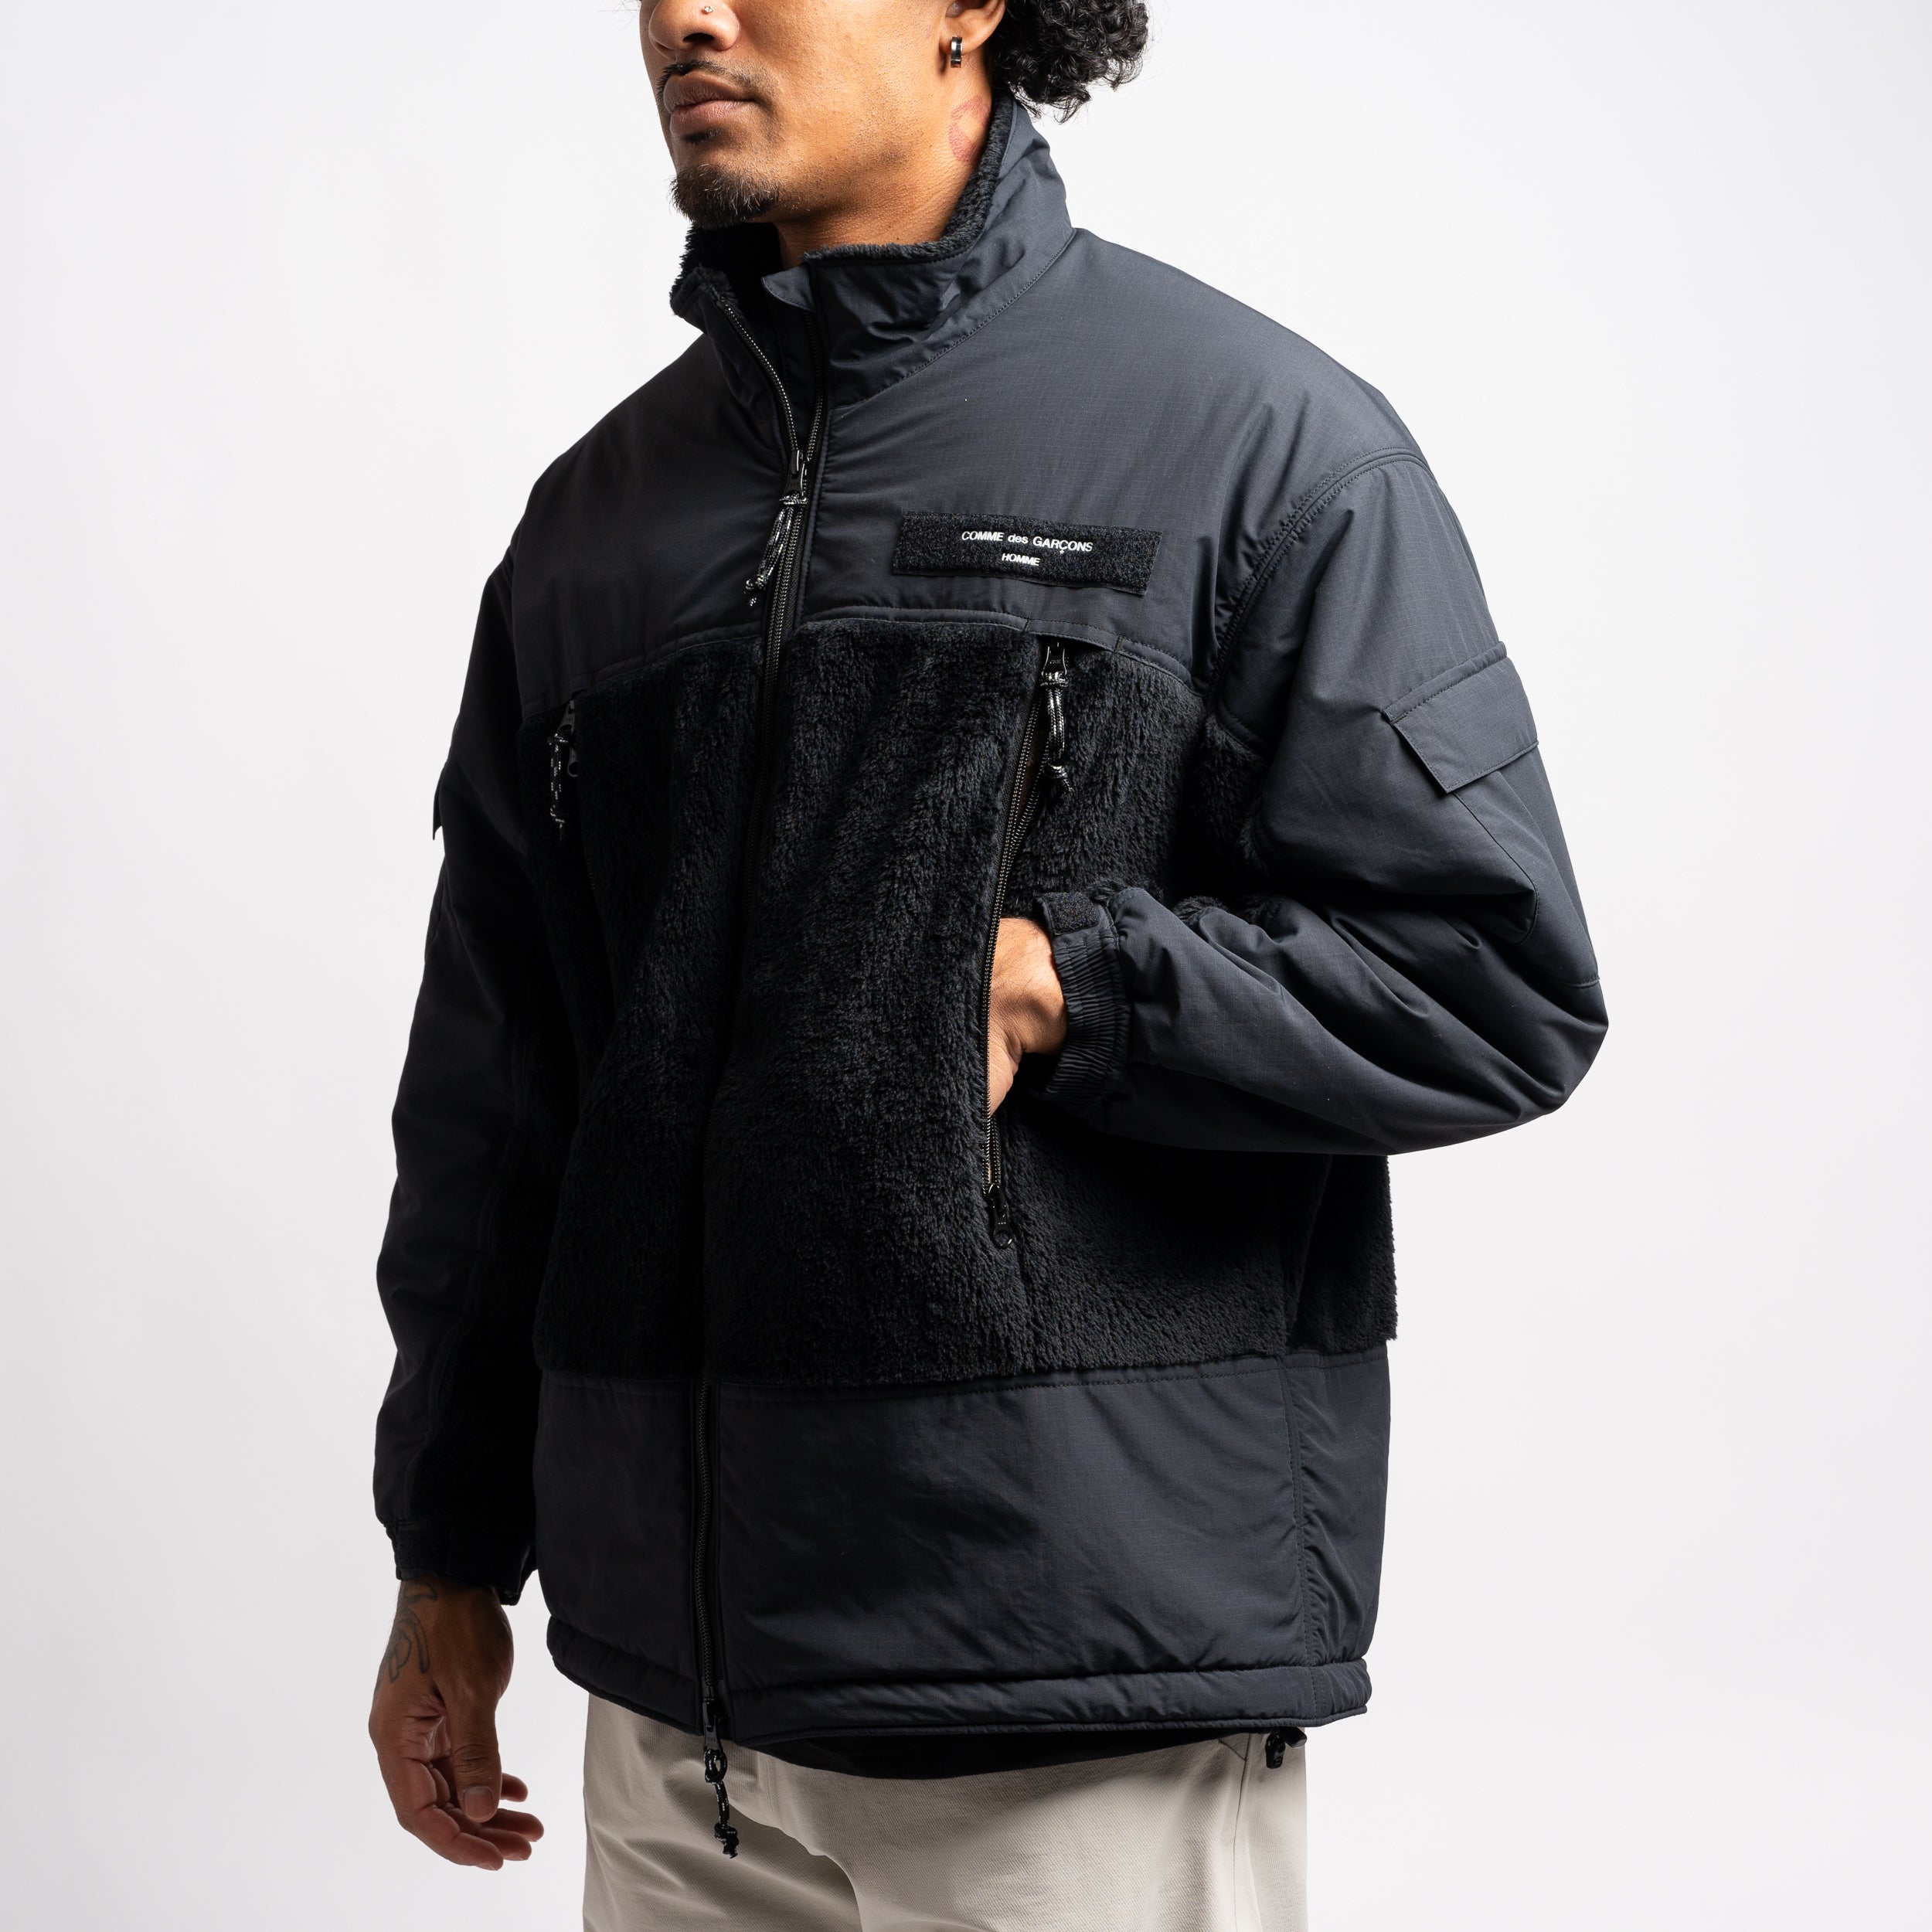 CdGH Hi-Loft Polartec Fleece Jacket HL-J013-051-1 Black